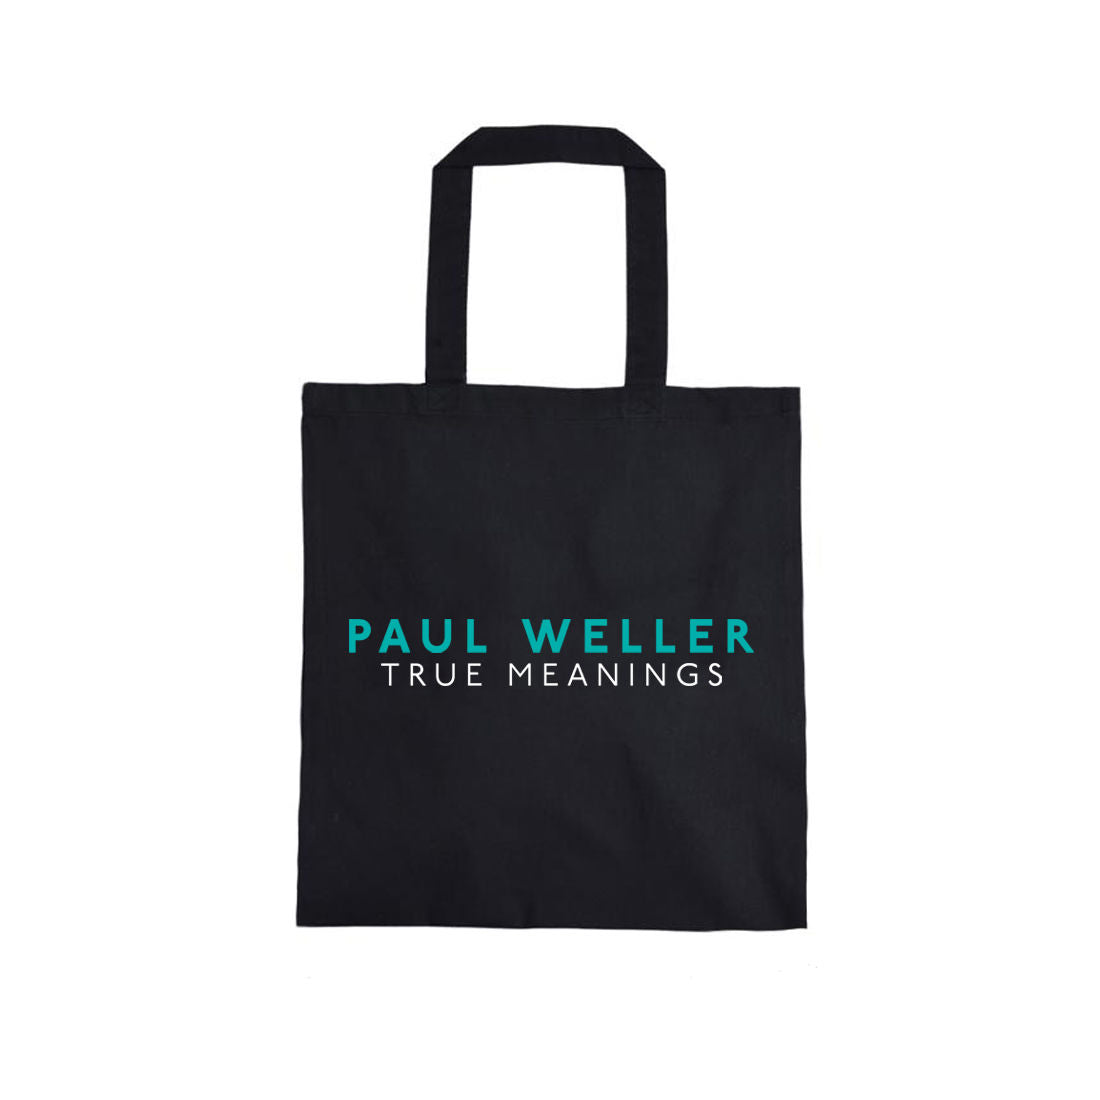 Paul Weller - True Meanings Tote Bag